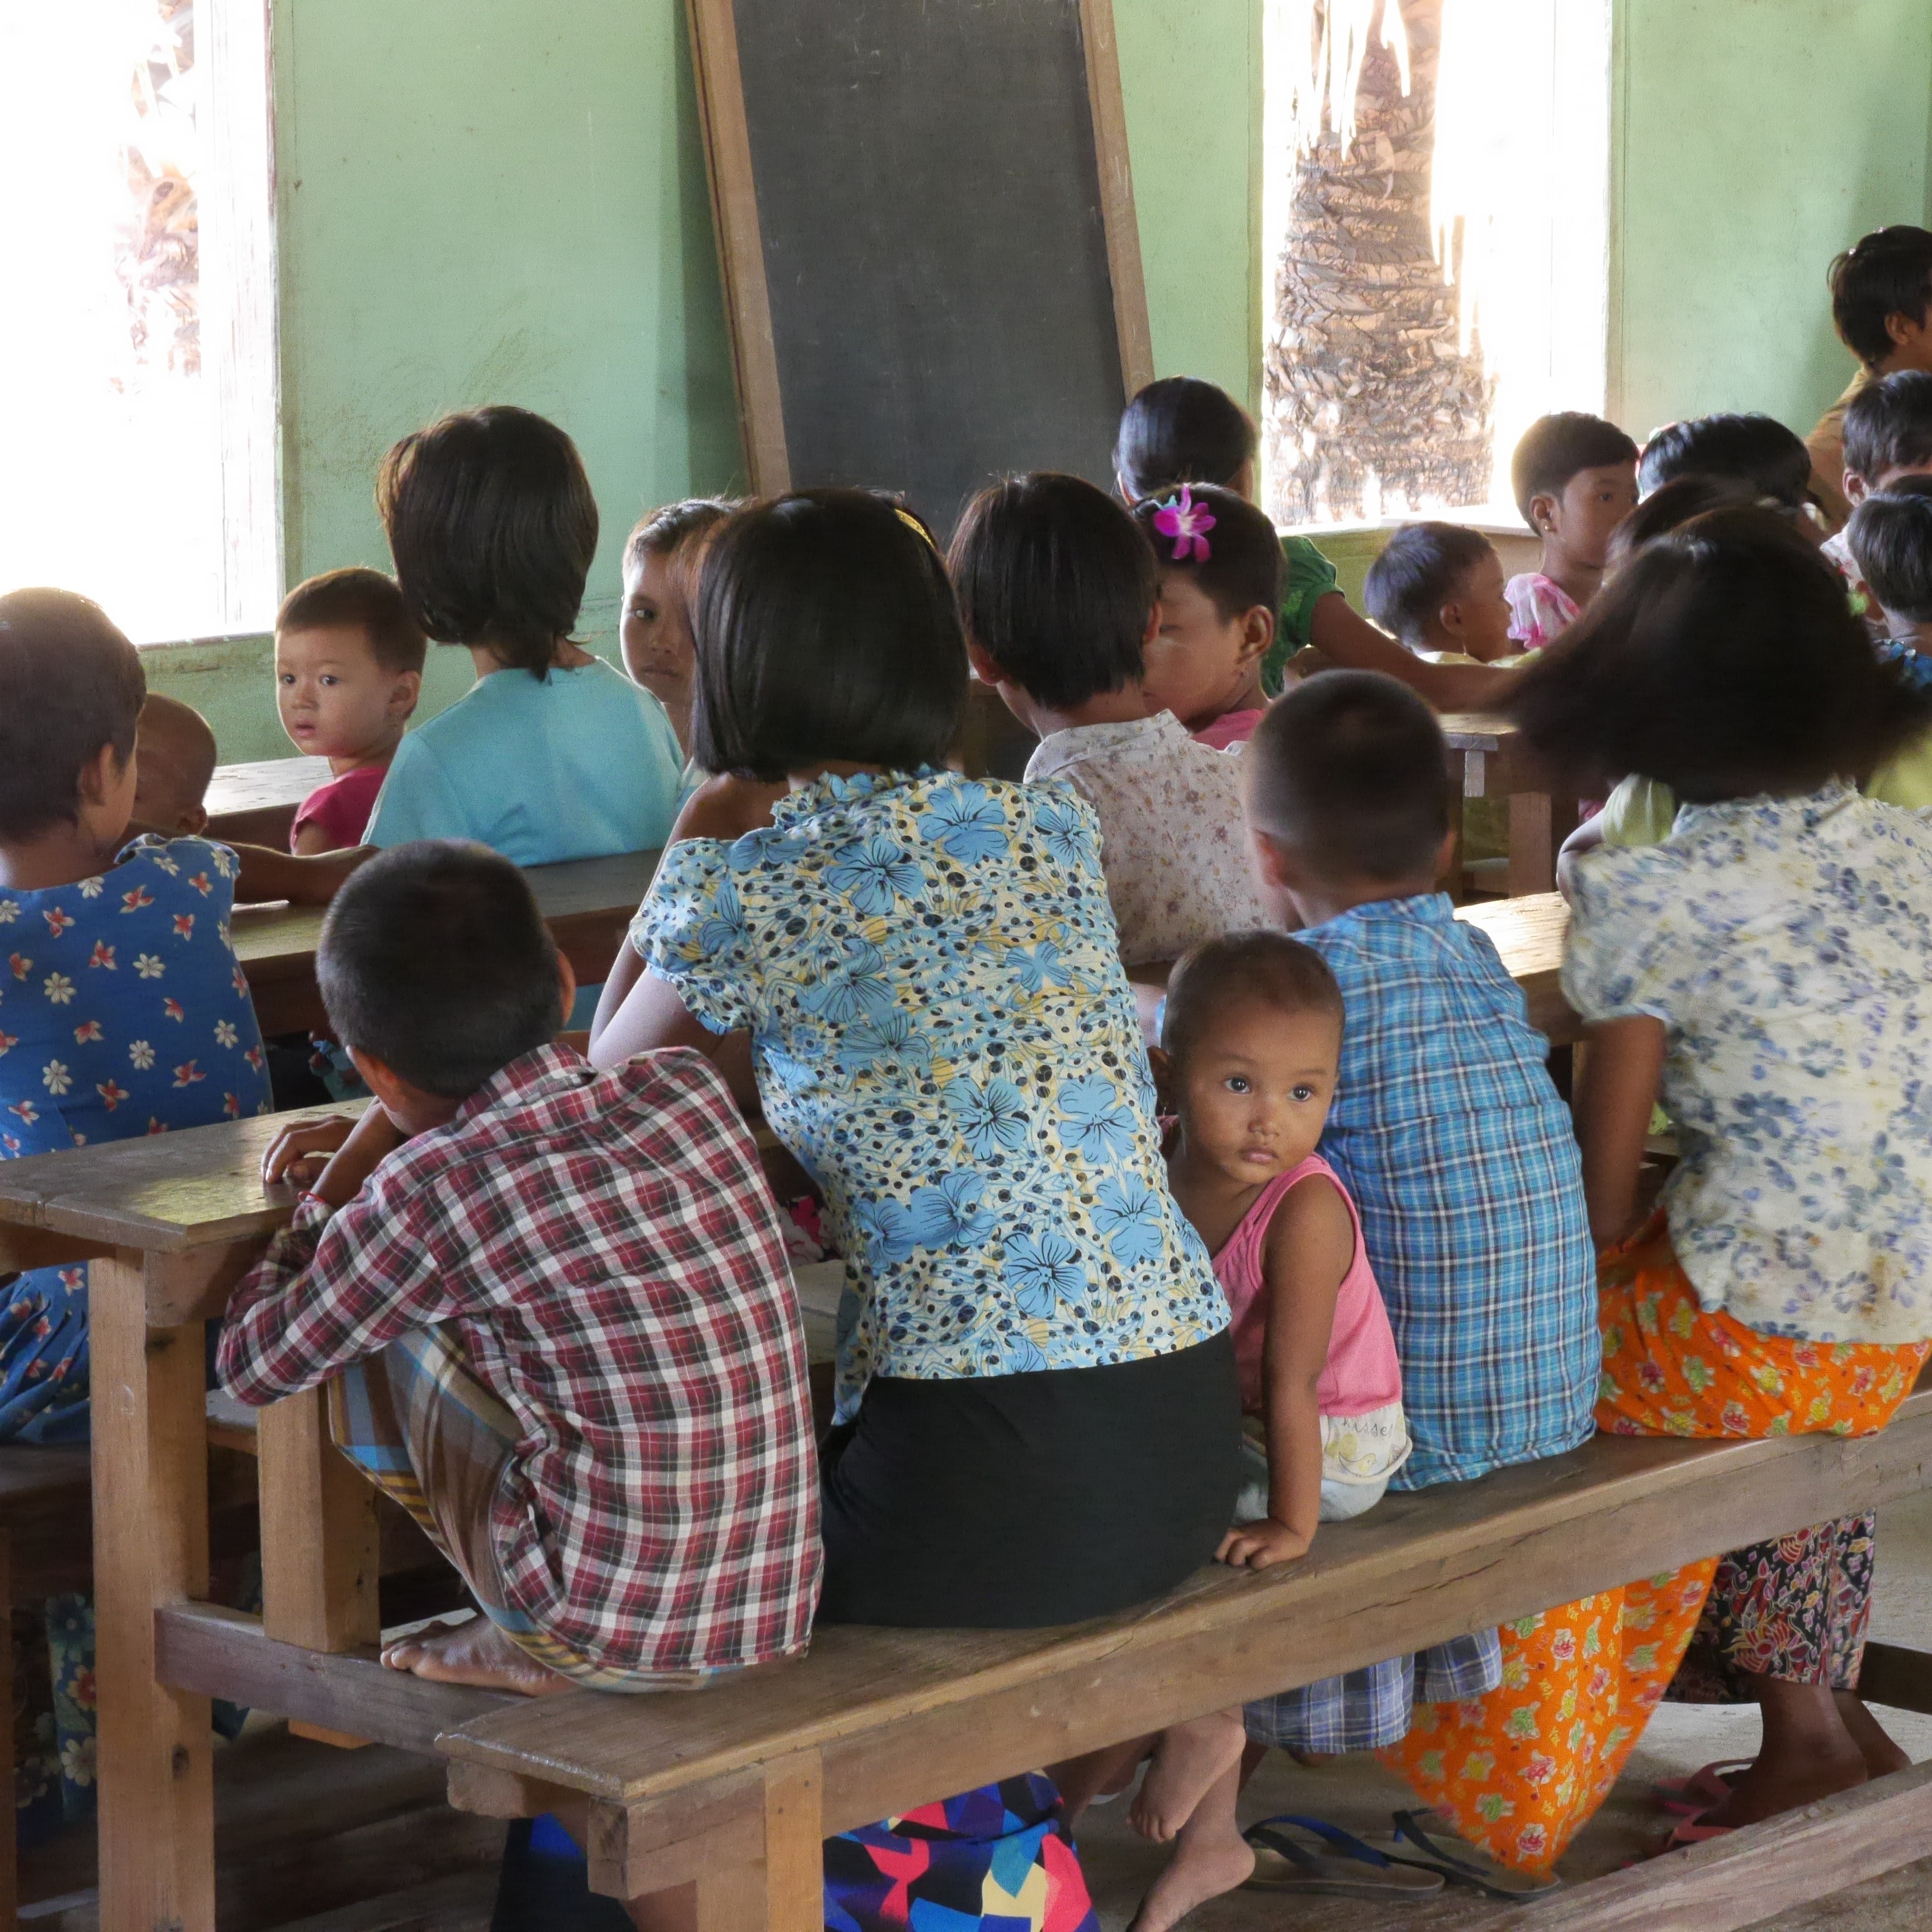 Village School, Myanmar, Third World, girls, child